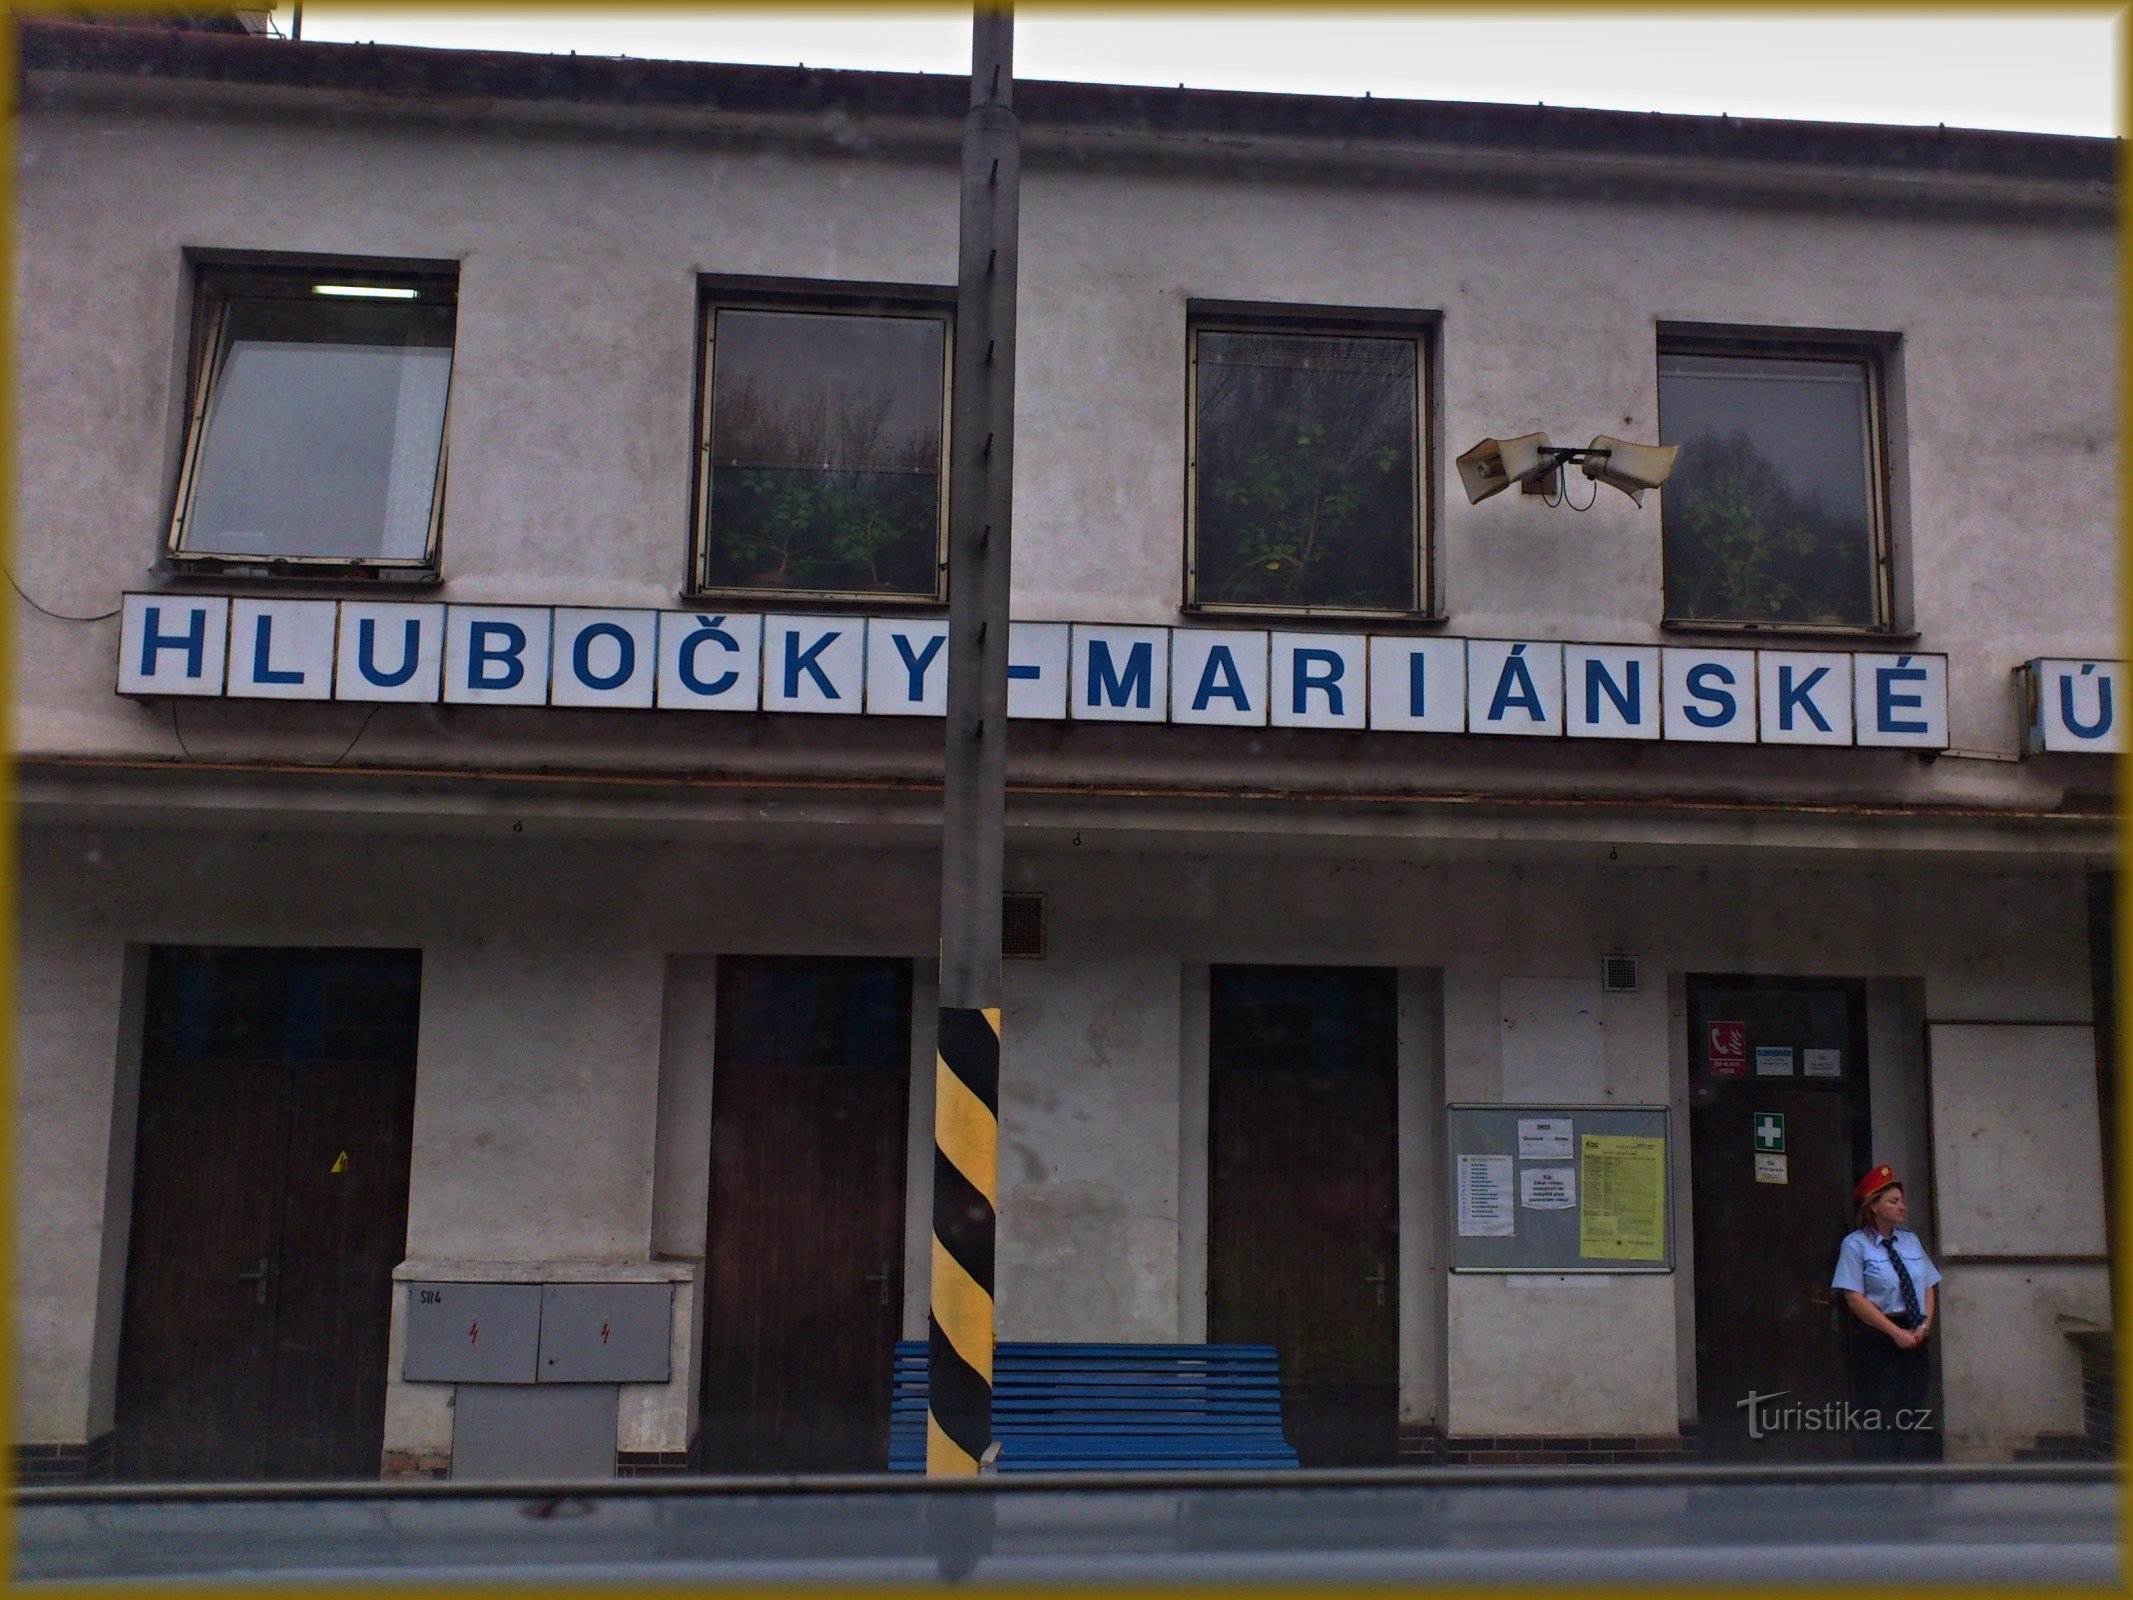 Valle Hlubočky-Marianske - estación de tren